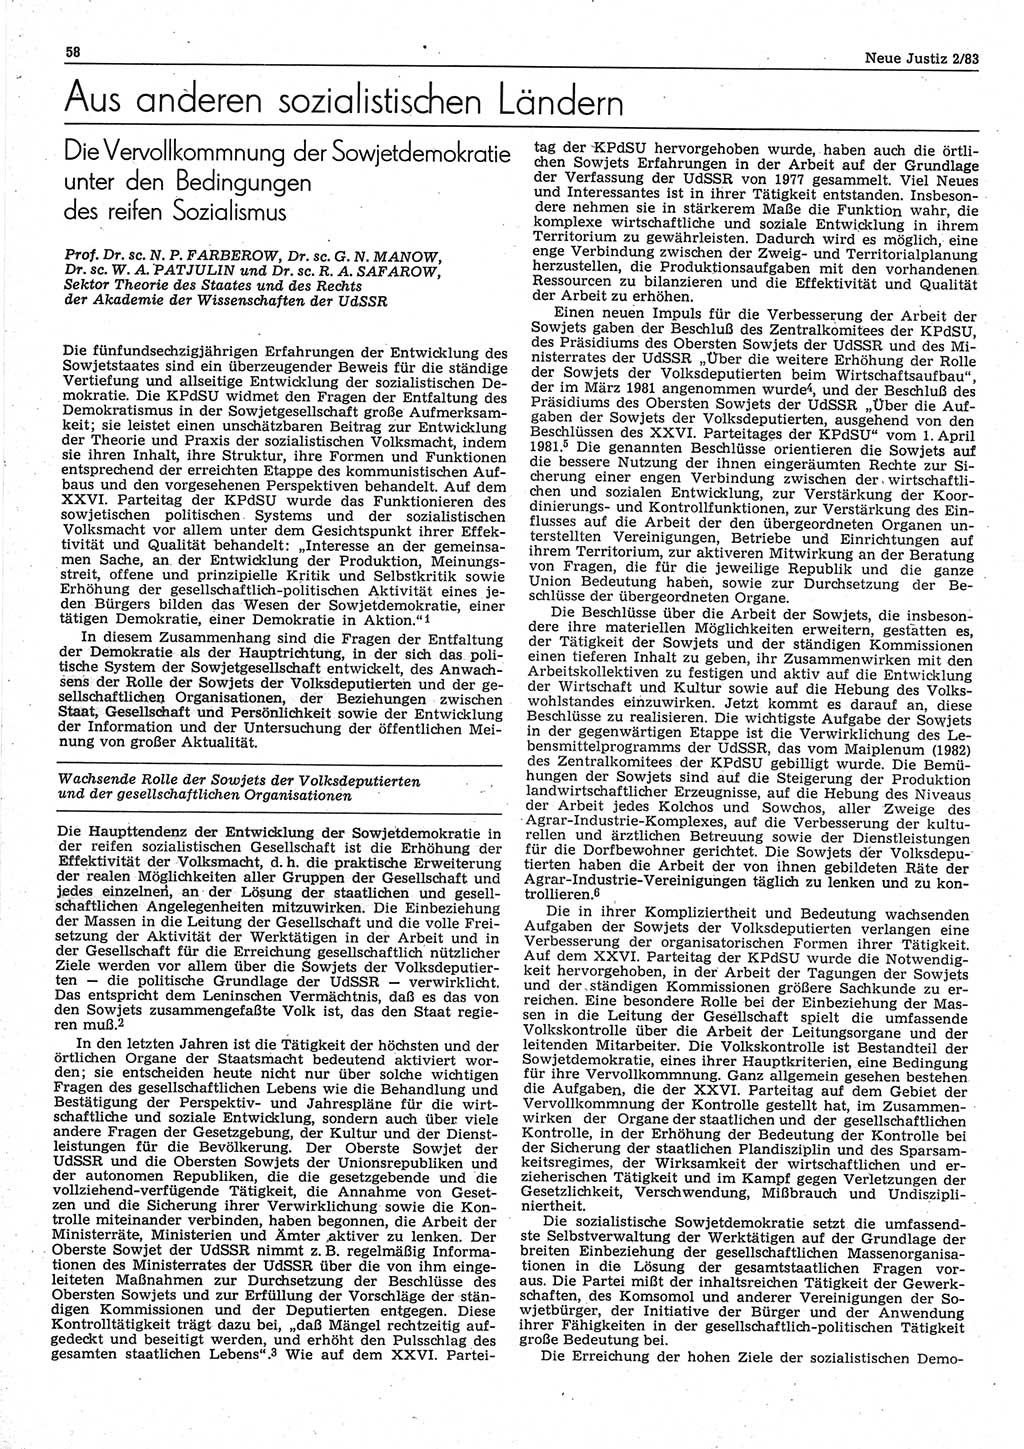 Neue Justiz (NJ), Zeitschrift für sozialistisches Recht und Gesetzlichkeit [Deutsche Demokratische Republik (DDR)], 37. Jahrgang 1983, Seite 58 (NJ DDR 1983, S. 58)